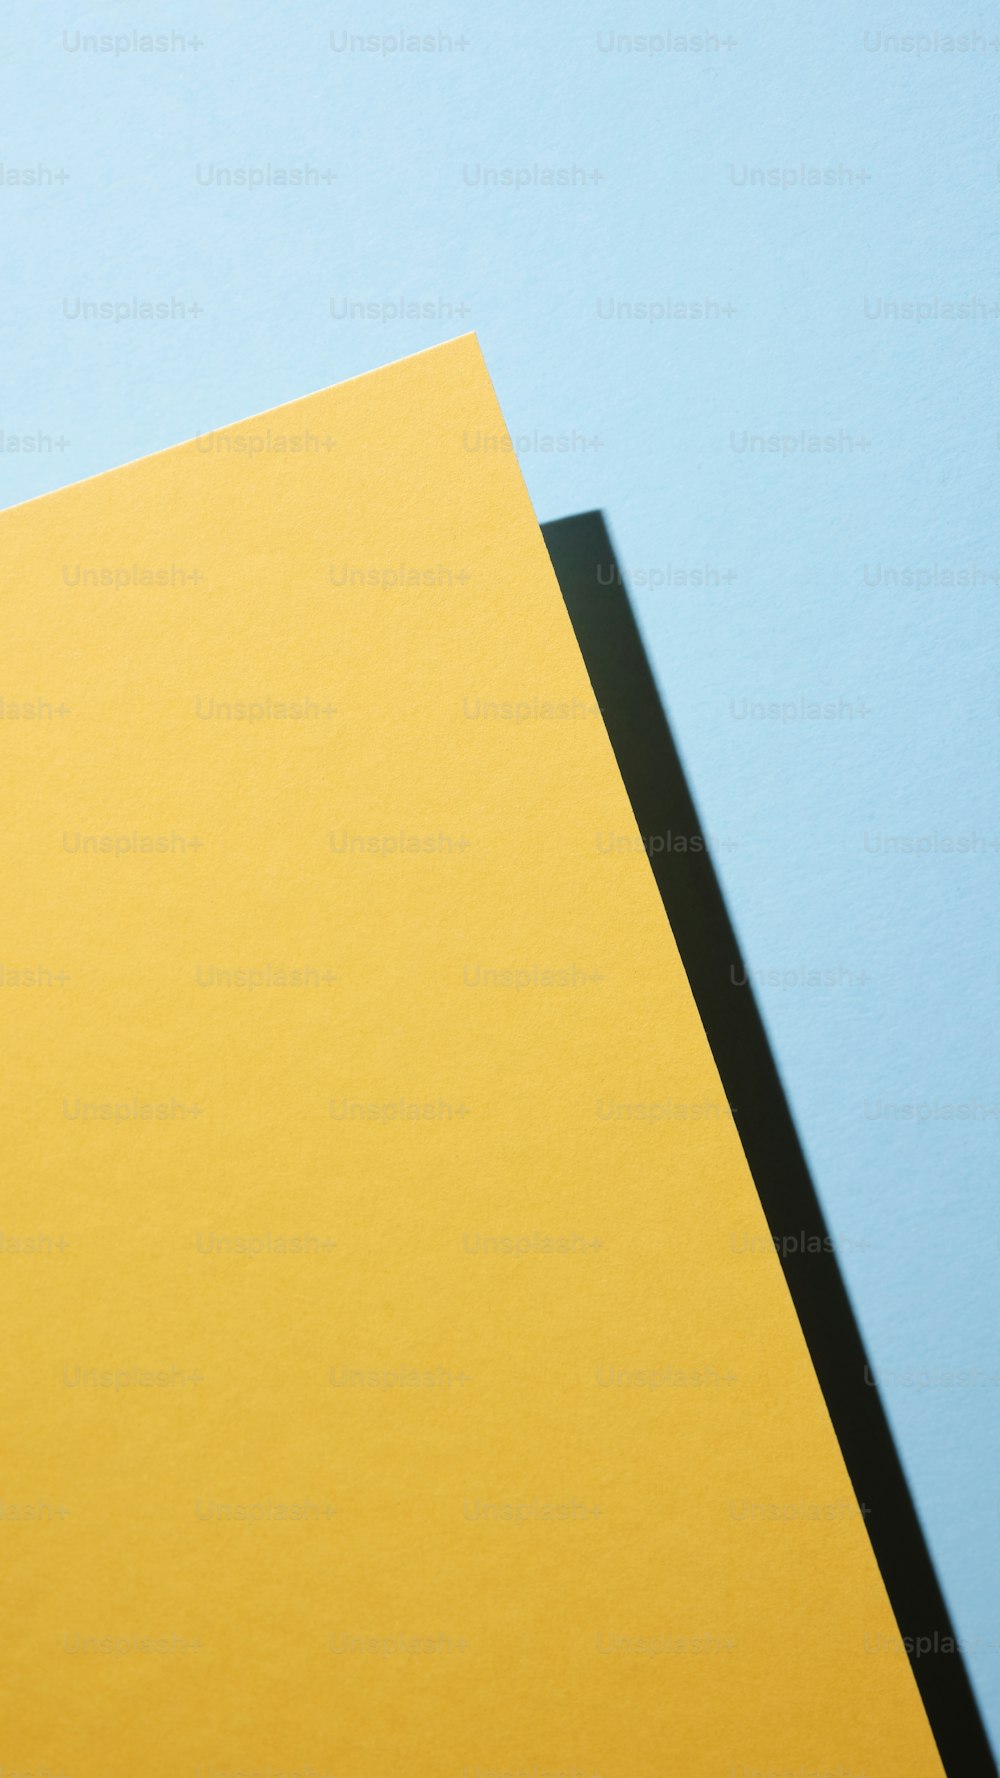 un pezzo di carta giallo su sfondo blu